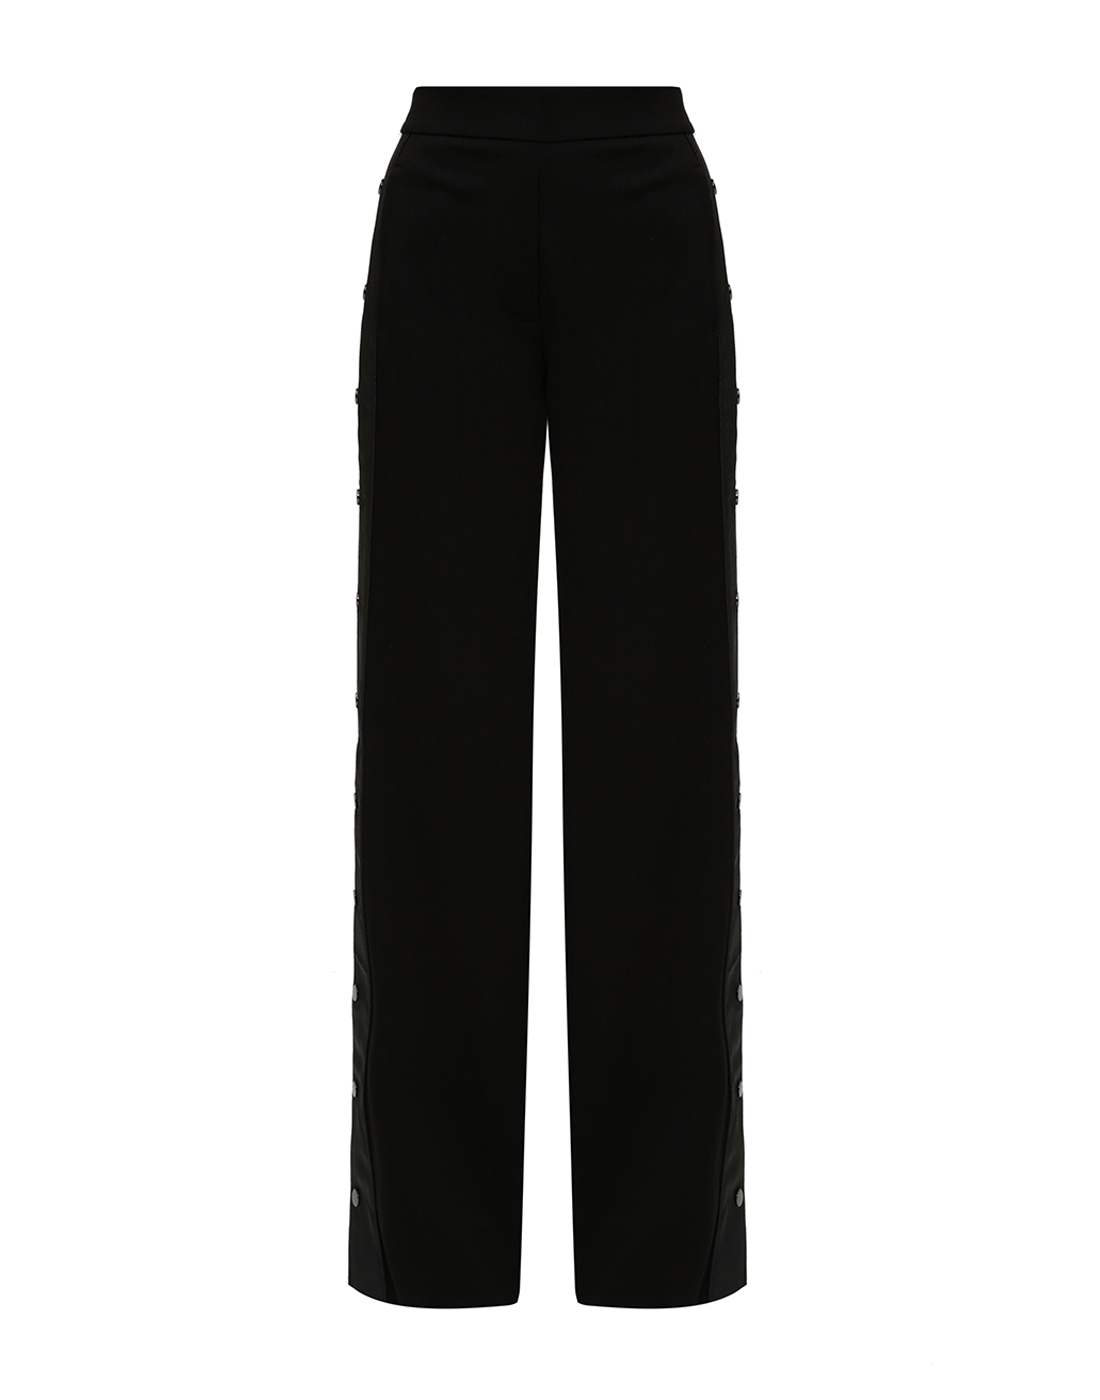 Женские черные брюки Dorothee Schumacher S548003/999-1